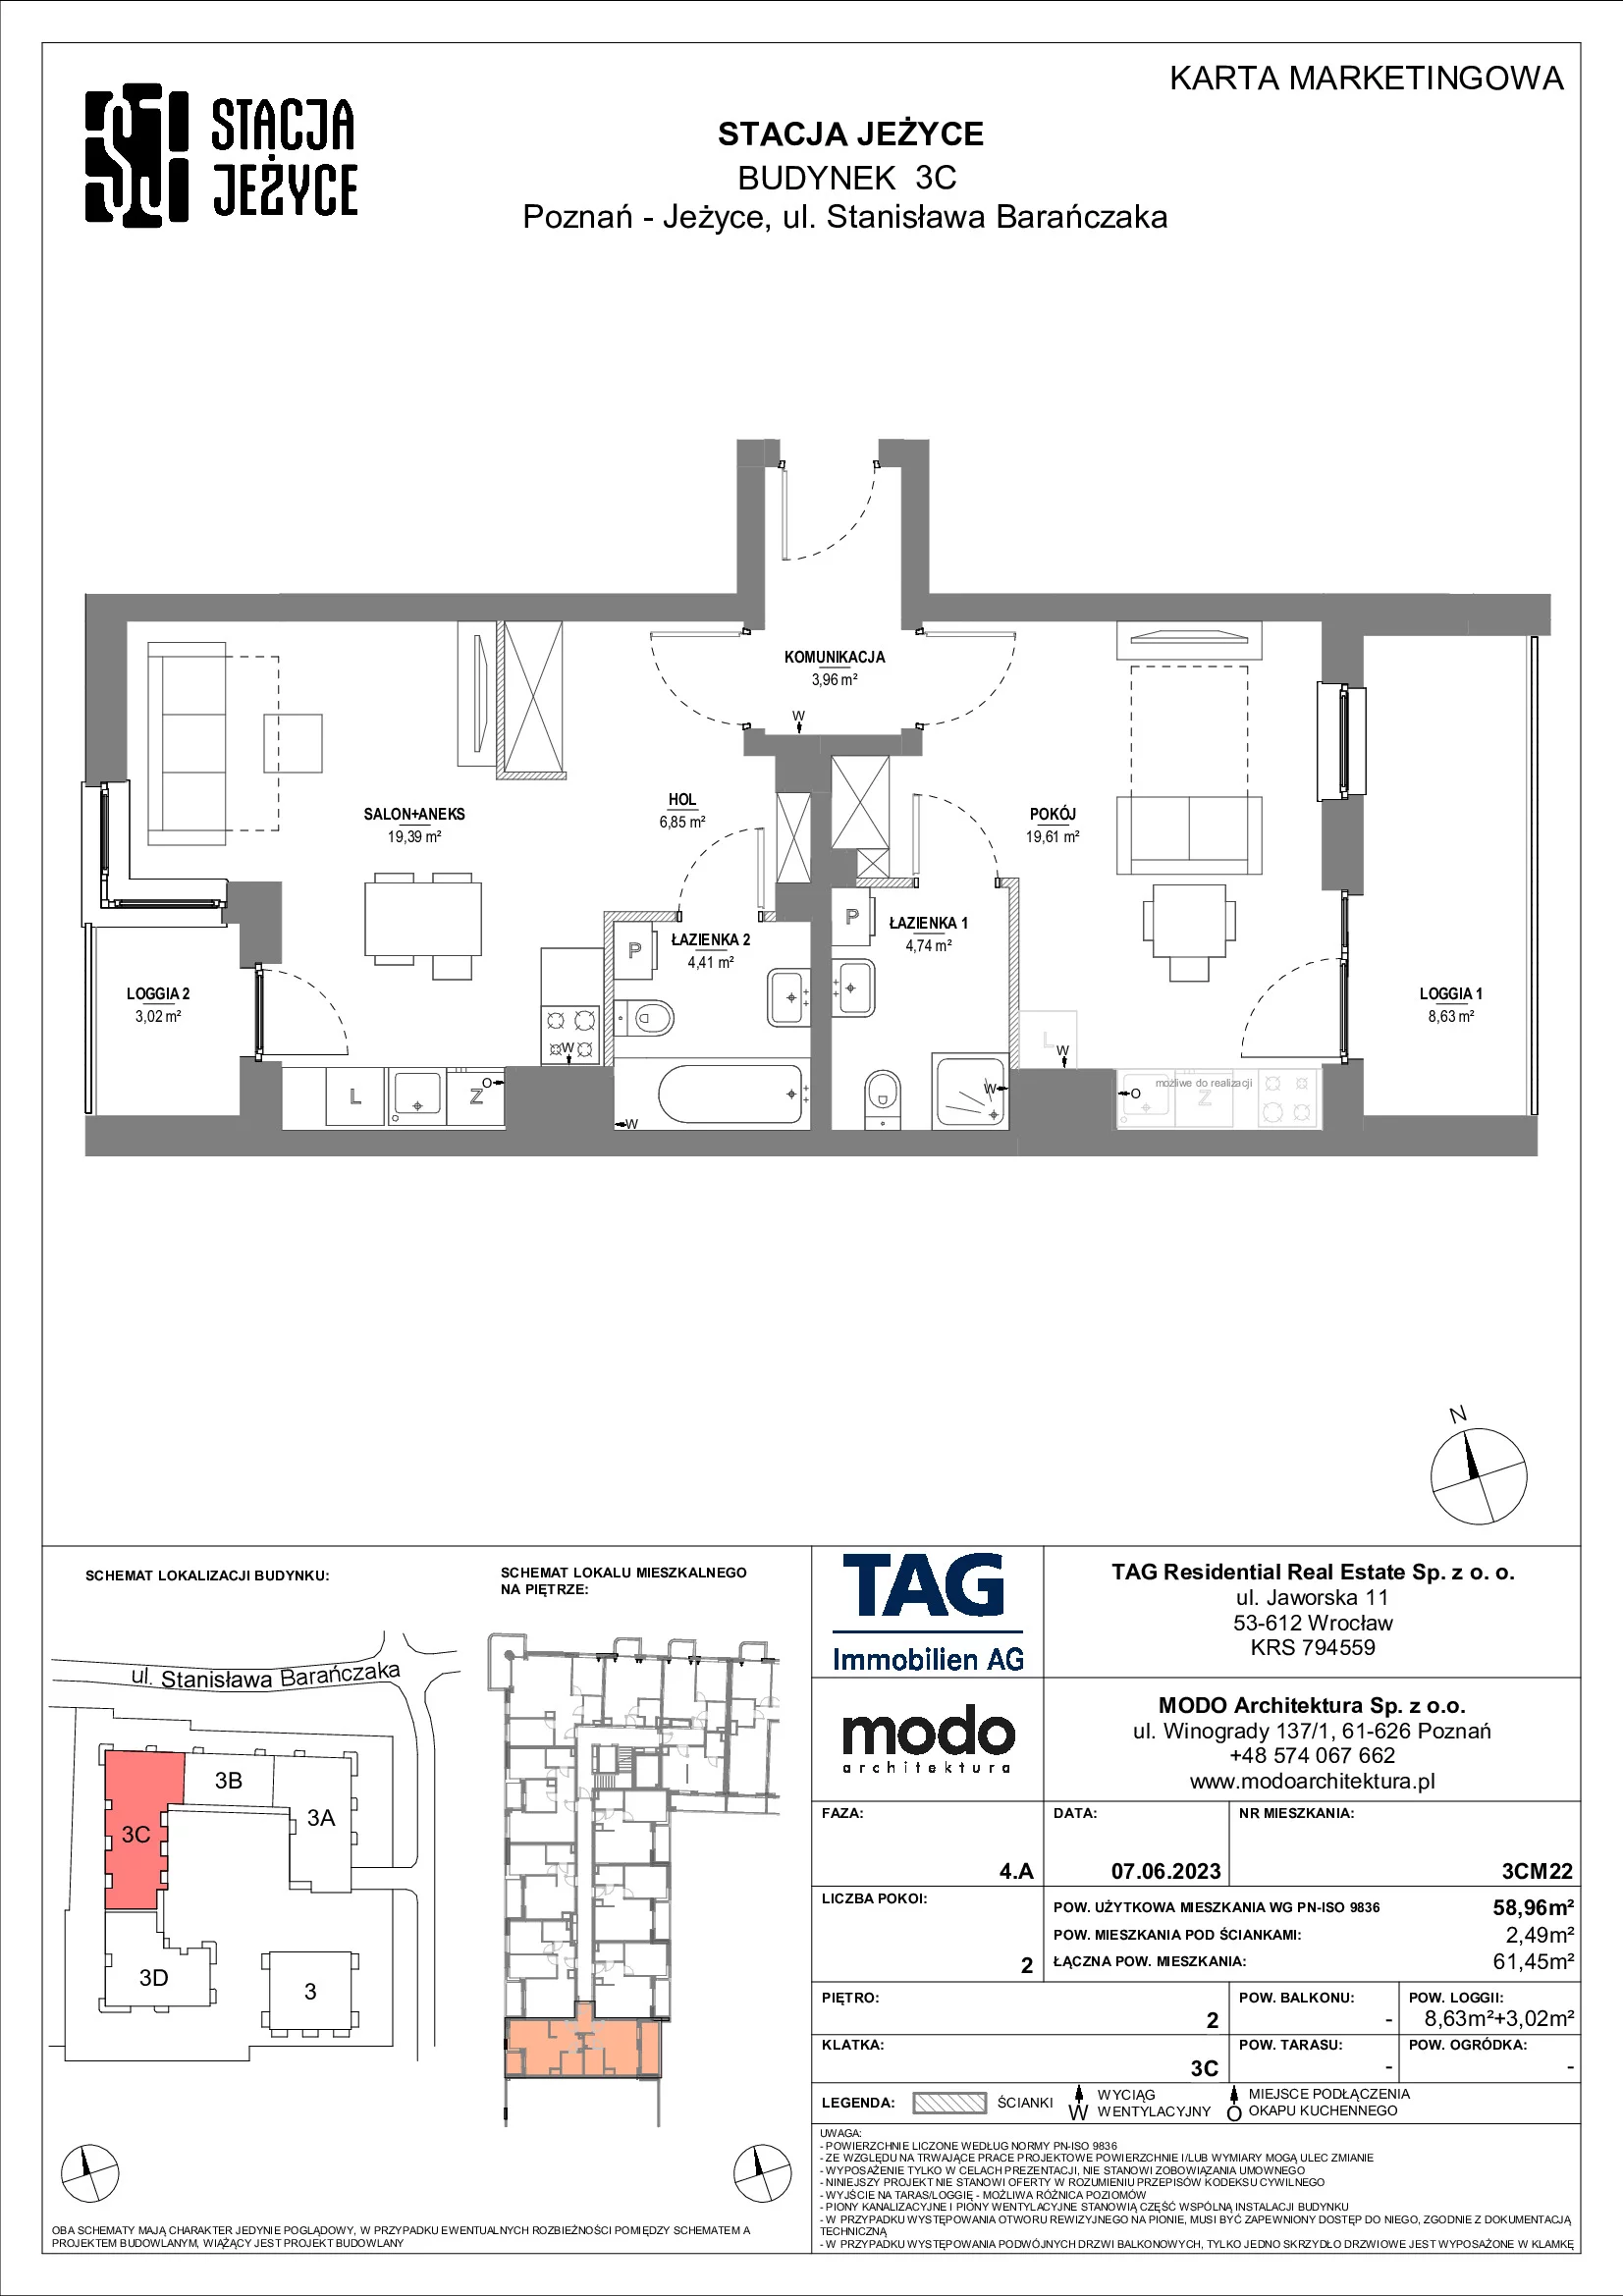 Mieszkanie 58,96 m², piętro 2, oferta nr 3CM22, Stacja Jeżyce, Poznań, Jeżyce, Jeżyce, ul. Stanisława Barańczaka 3